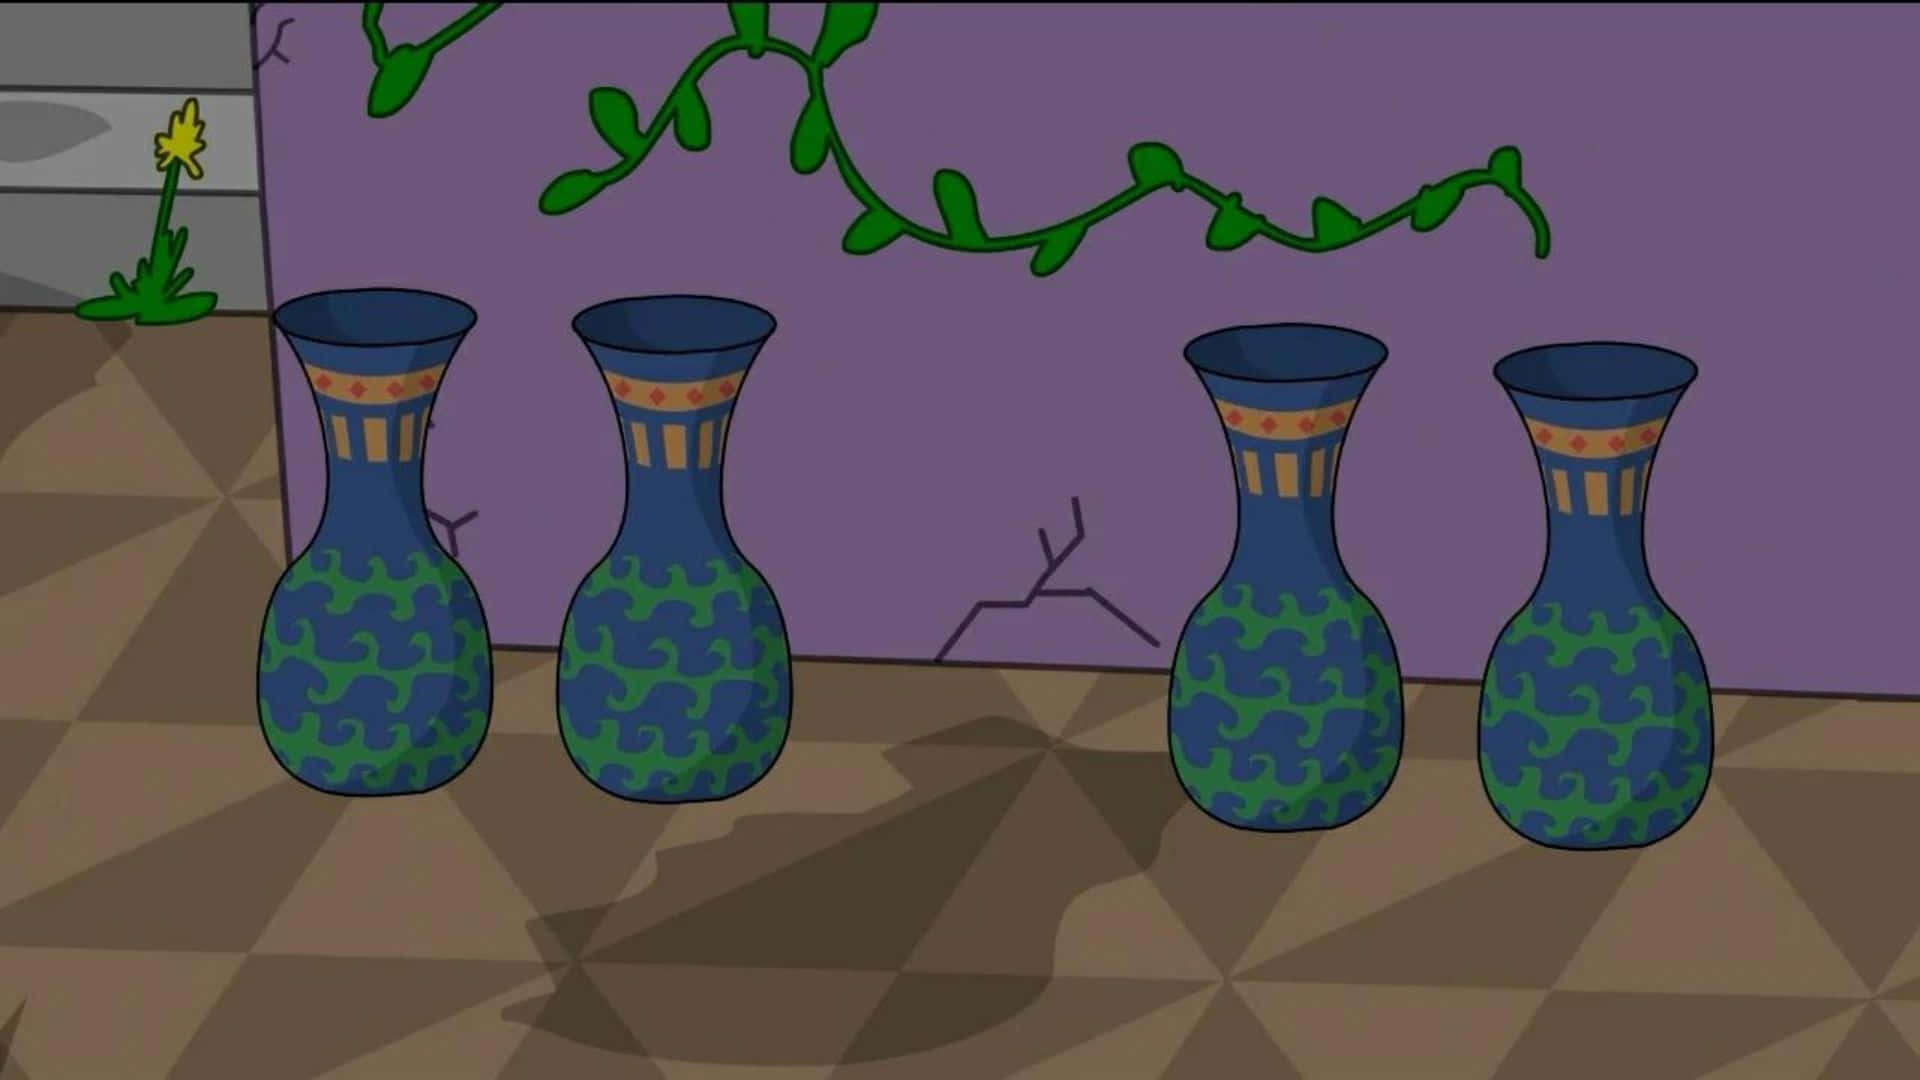 Einecartoon-bild Von Vasen In Einem Raum.